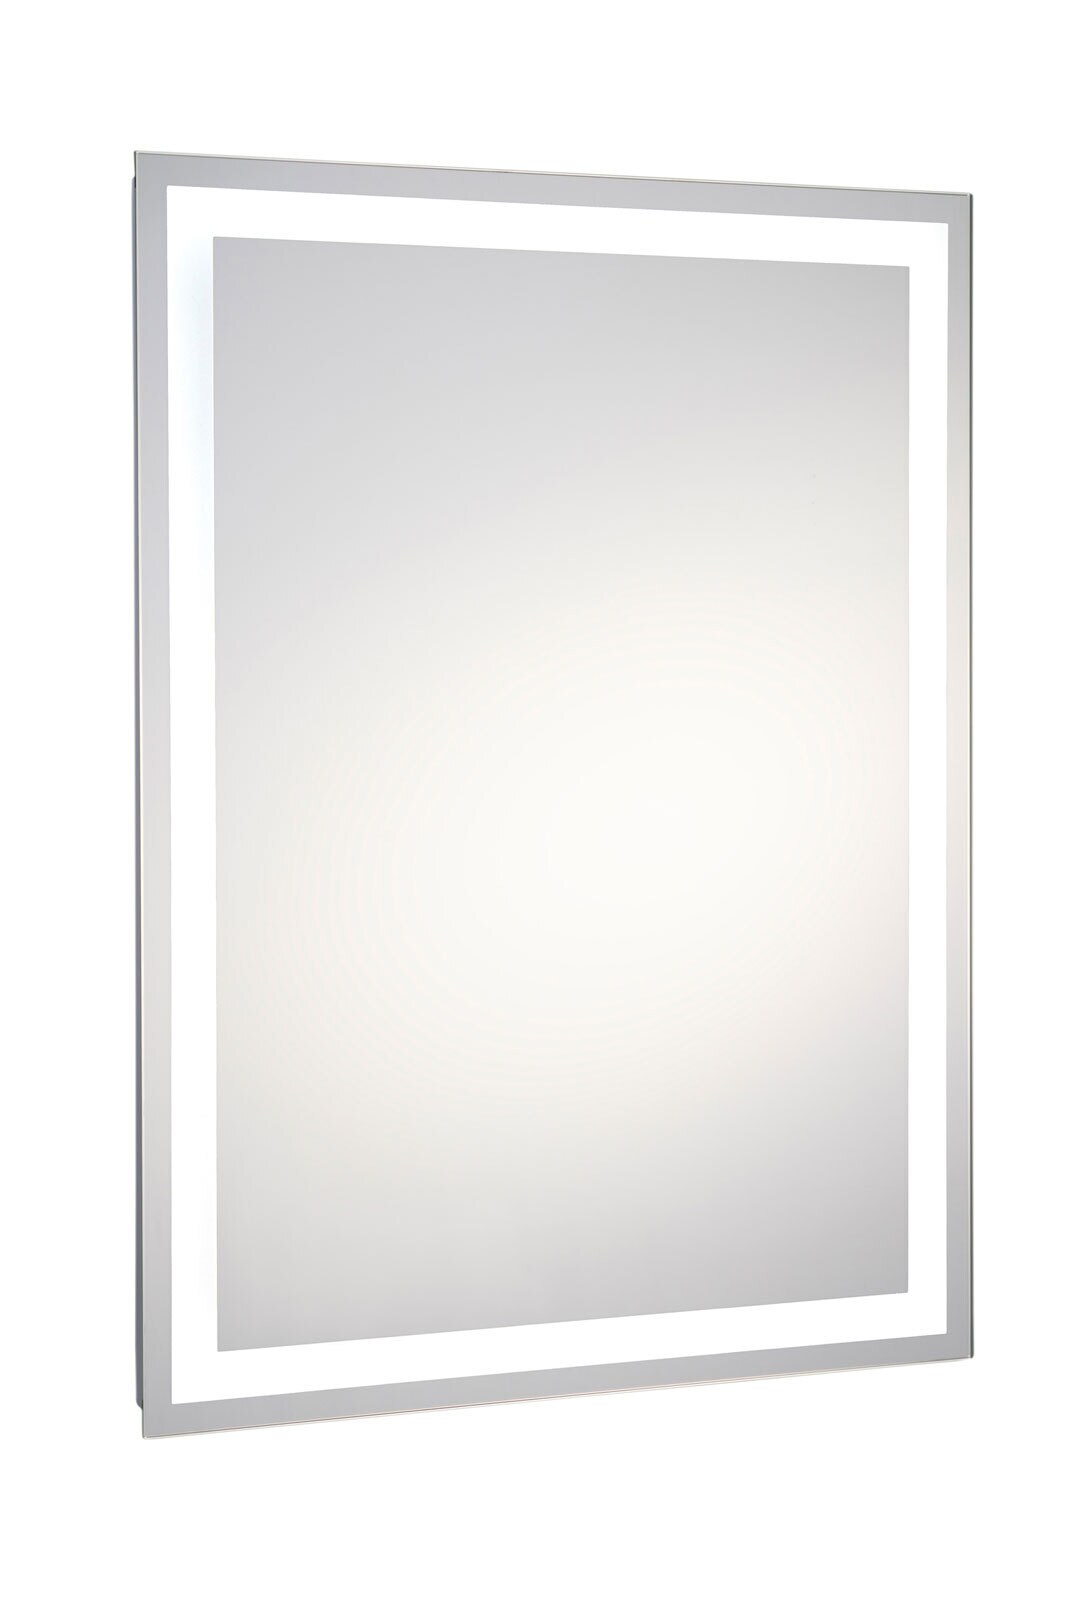 CASAVANTI Badspiegel beleuchtet 50 x 70 cm Spiegelglas